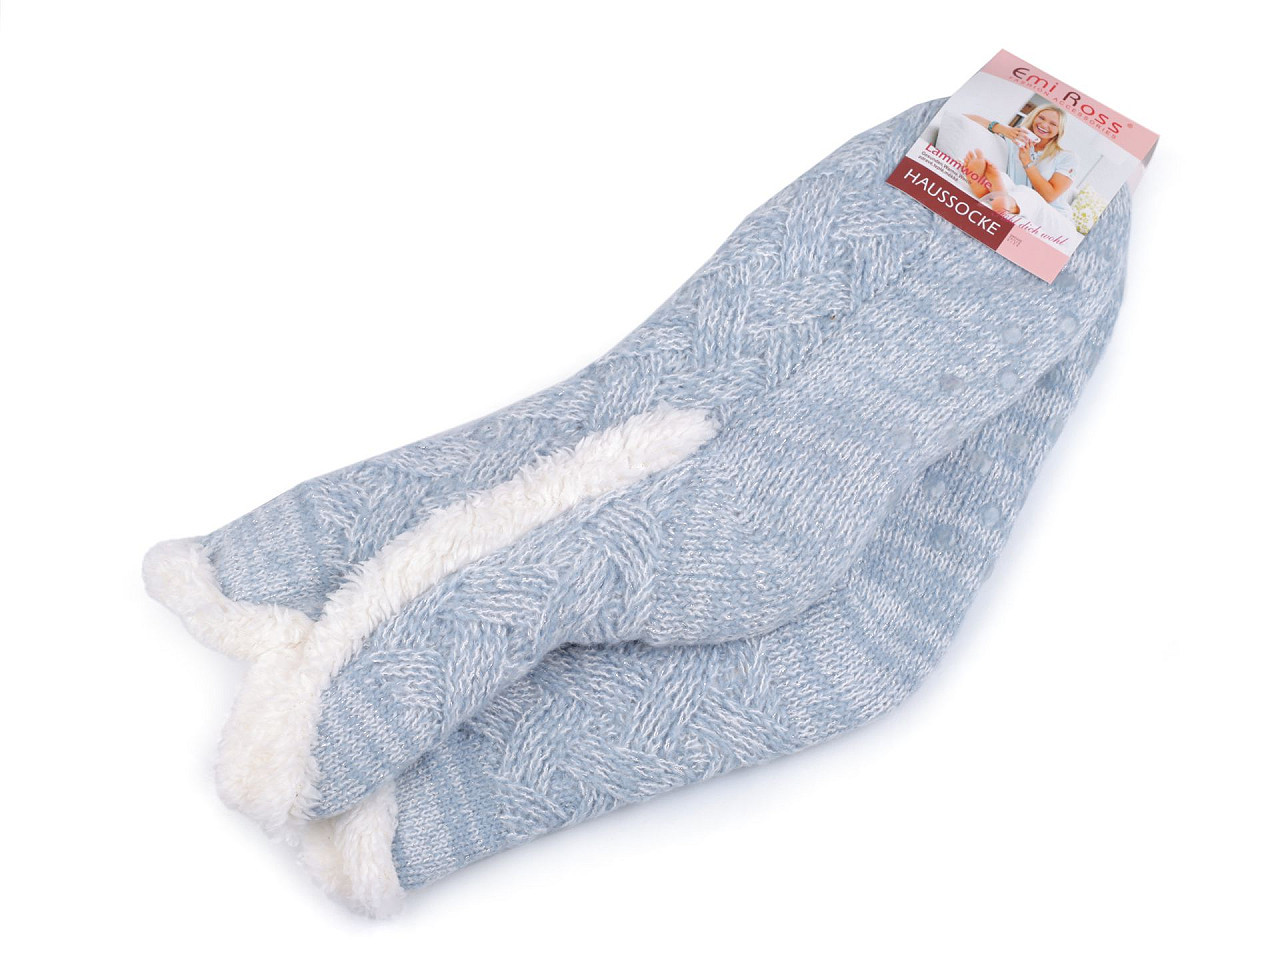 Ponožky zimní s kožíškem a protiskluzem Emi Ross, barva 8 (39-42) modrá světlá